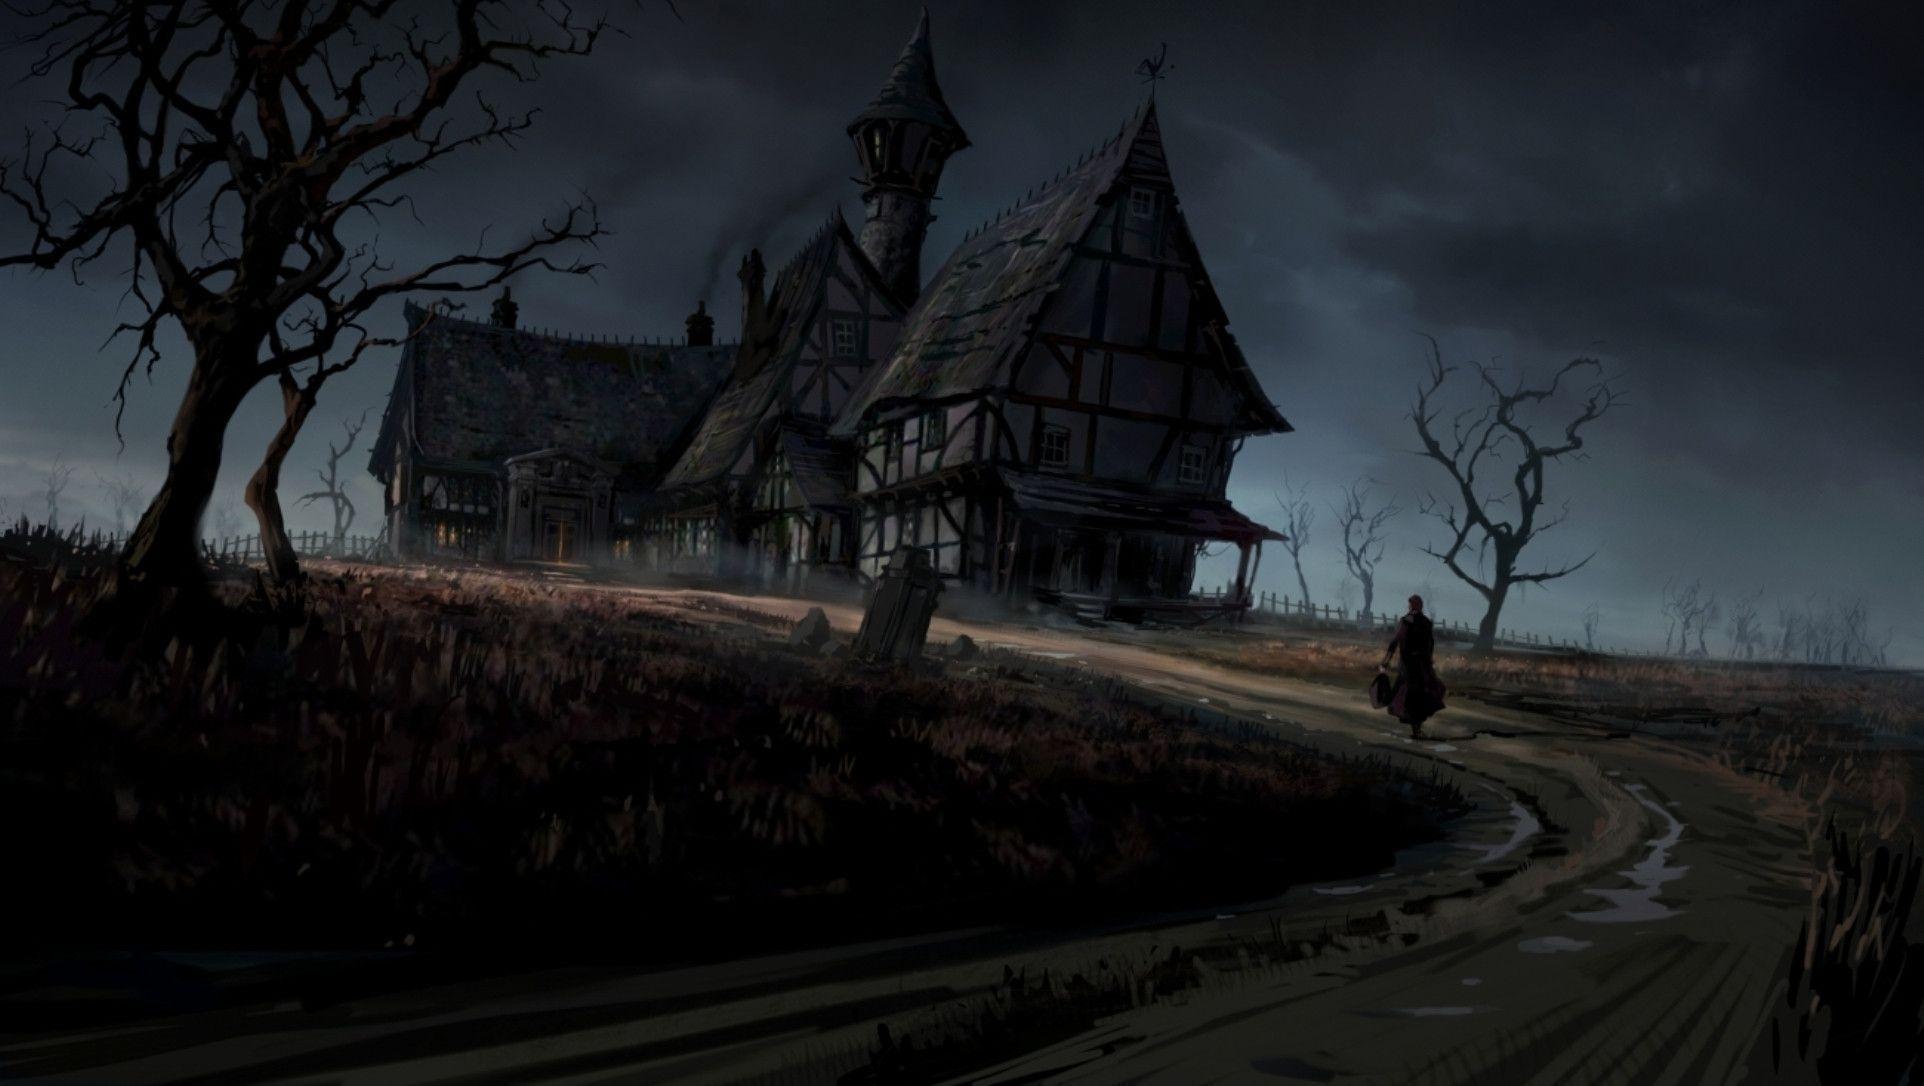 نقاشی ترسناک خانه های چوبی در میان دشت به سبک گوتیک